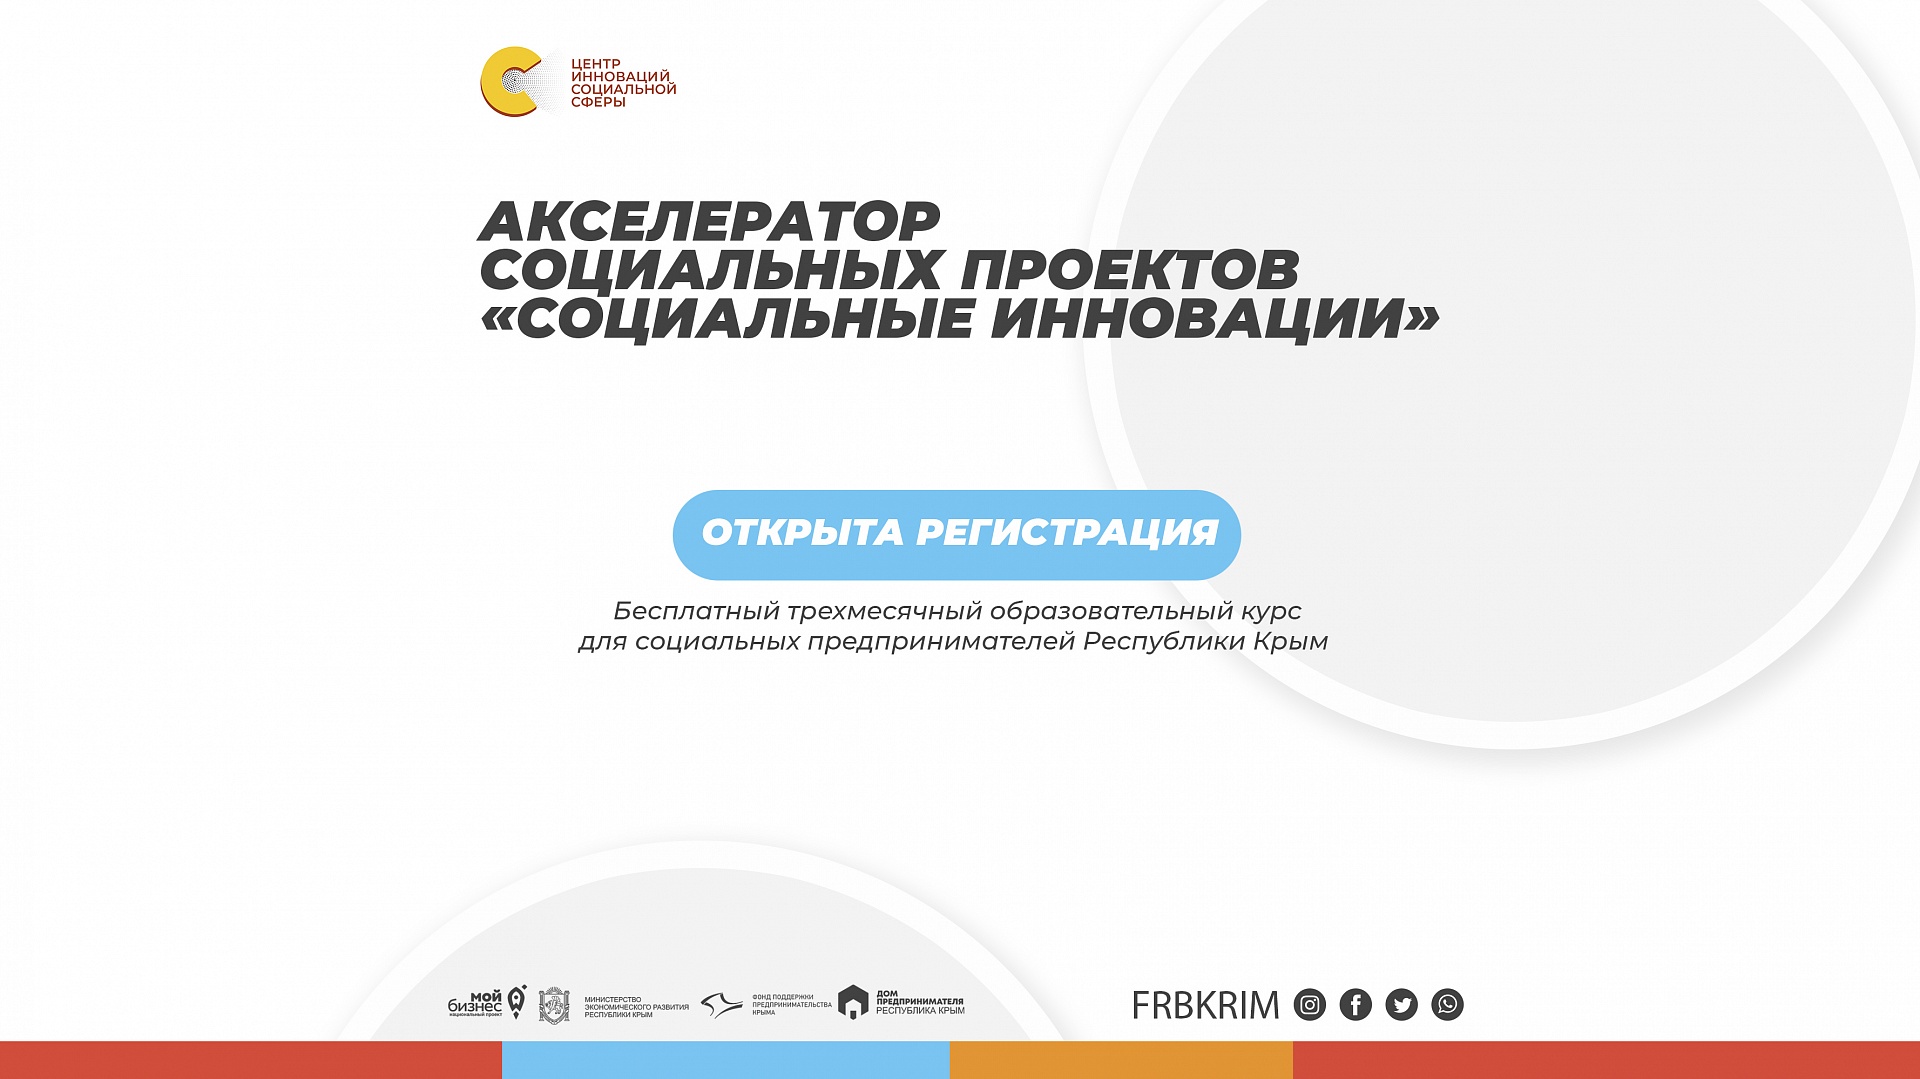 Внимание! Старт акселерационной программы для социальных предпринимателей Республики Крым